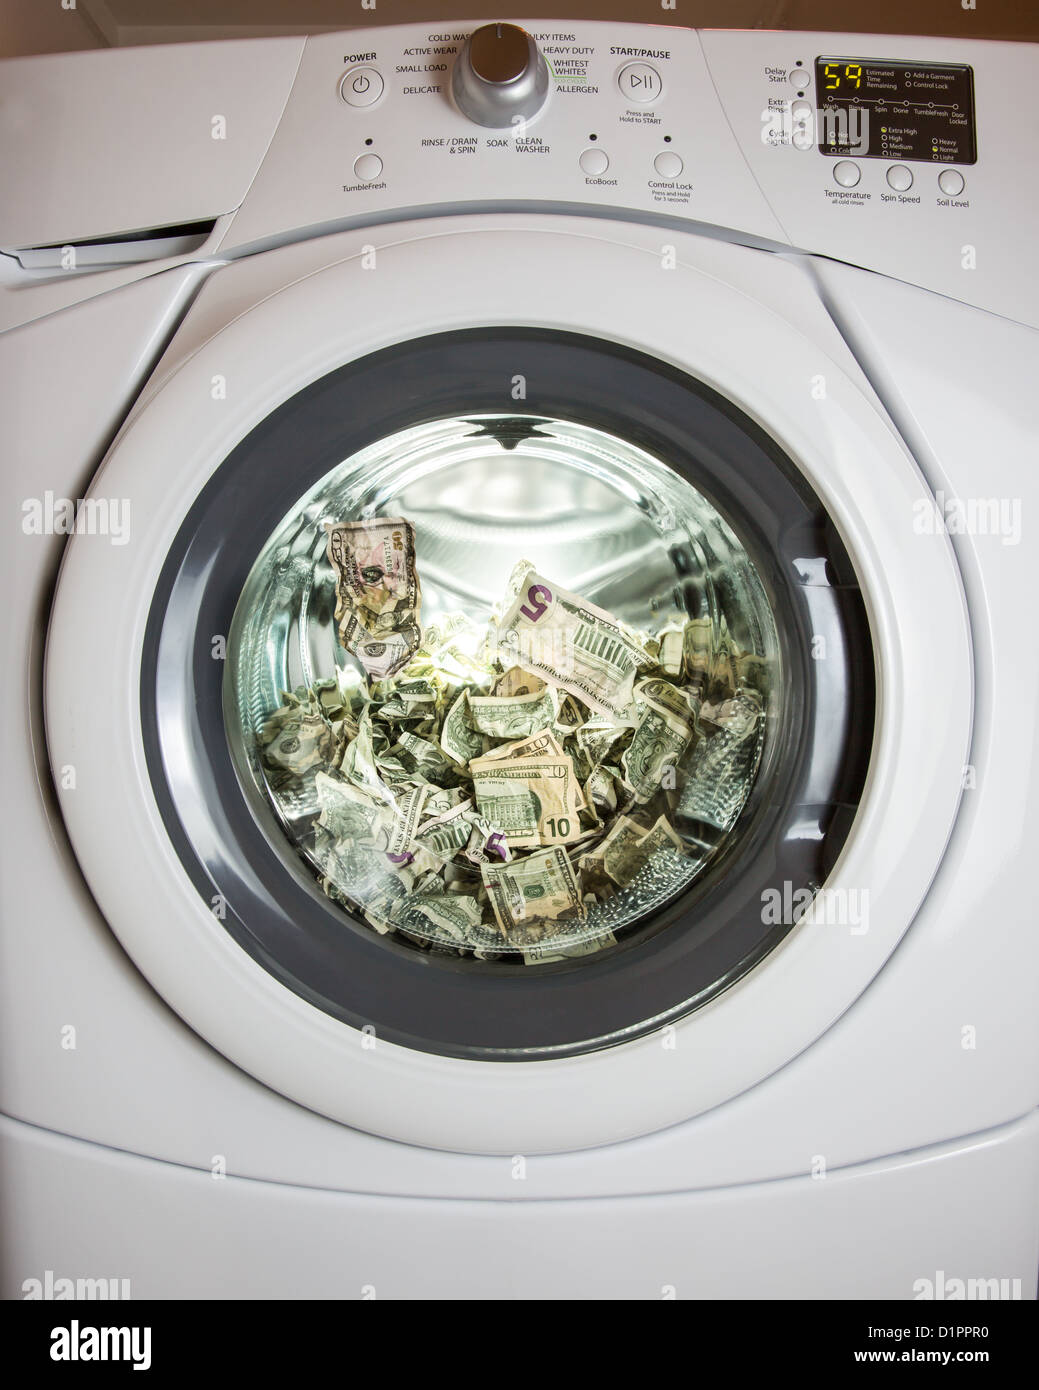 Es geht nicht nur um sauberes Geld. Die kriminelle Weg von Geldwäsche Geld ist ein bisschen anders, aber dieses Bild den Punkt ankommt. Stockfoto